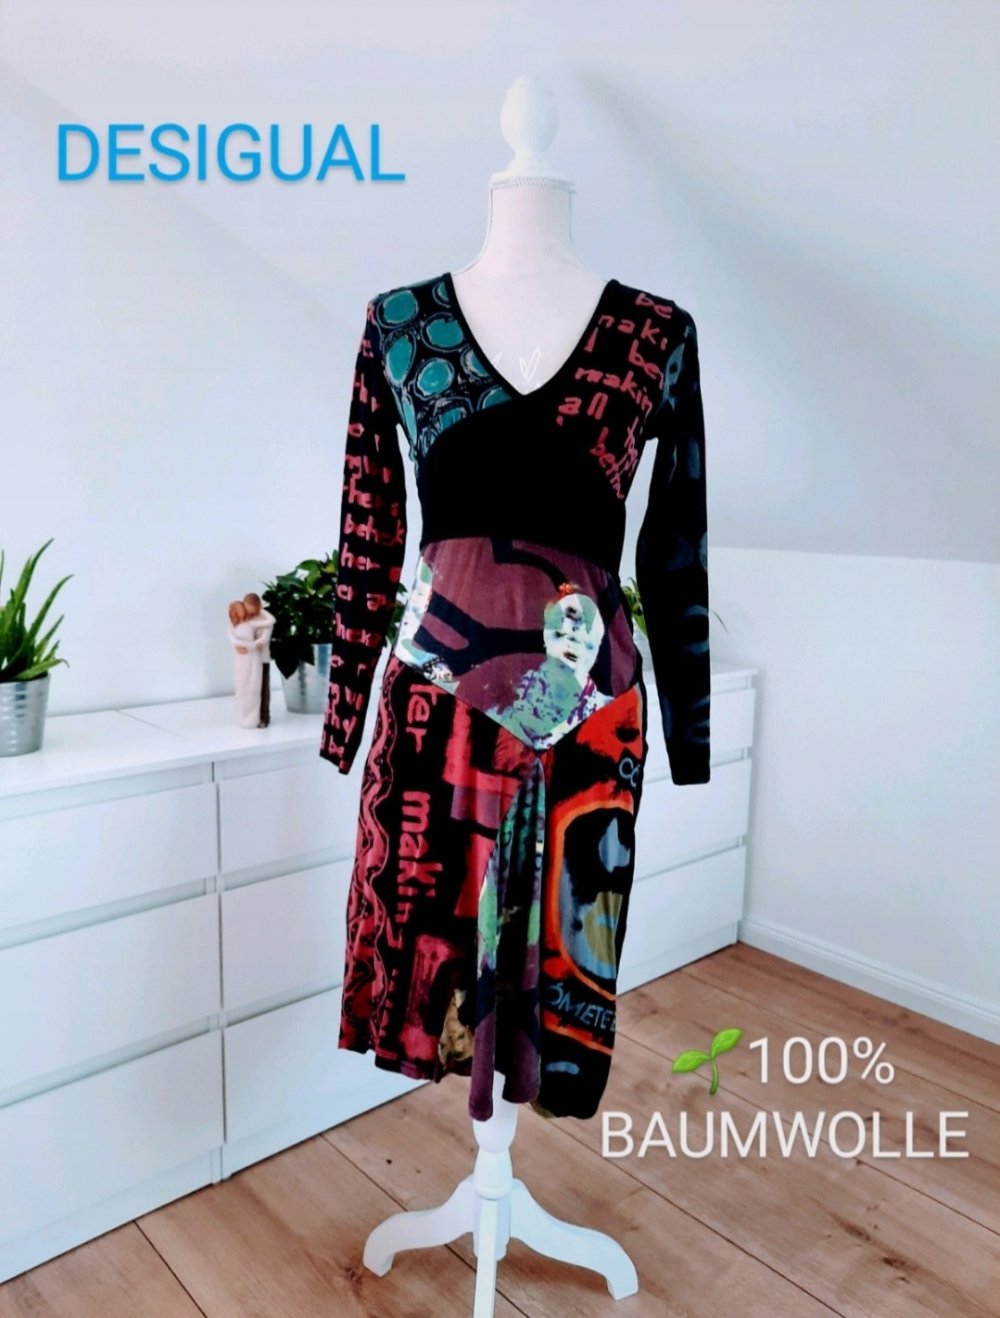 100% Baumwolle Desigual Kleid, natural, nachhaltig, organic, öko, bio, ::  Kleiderkorb.ch